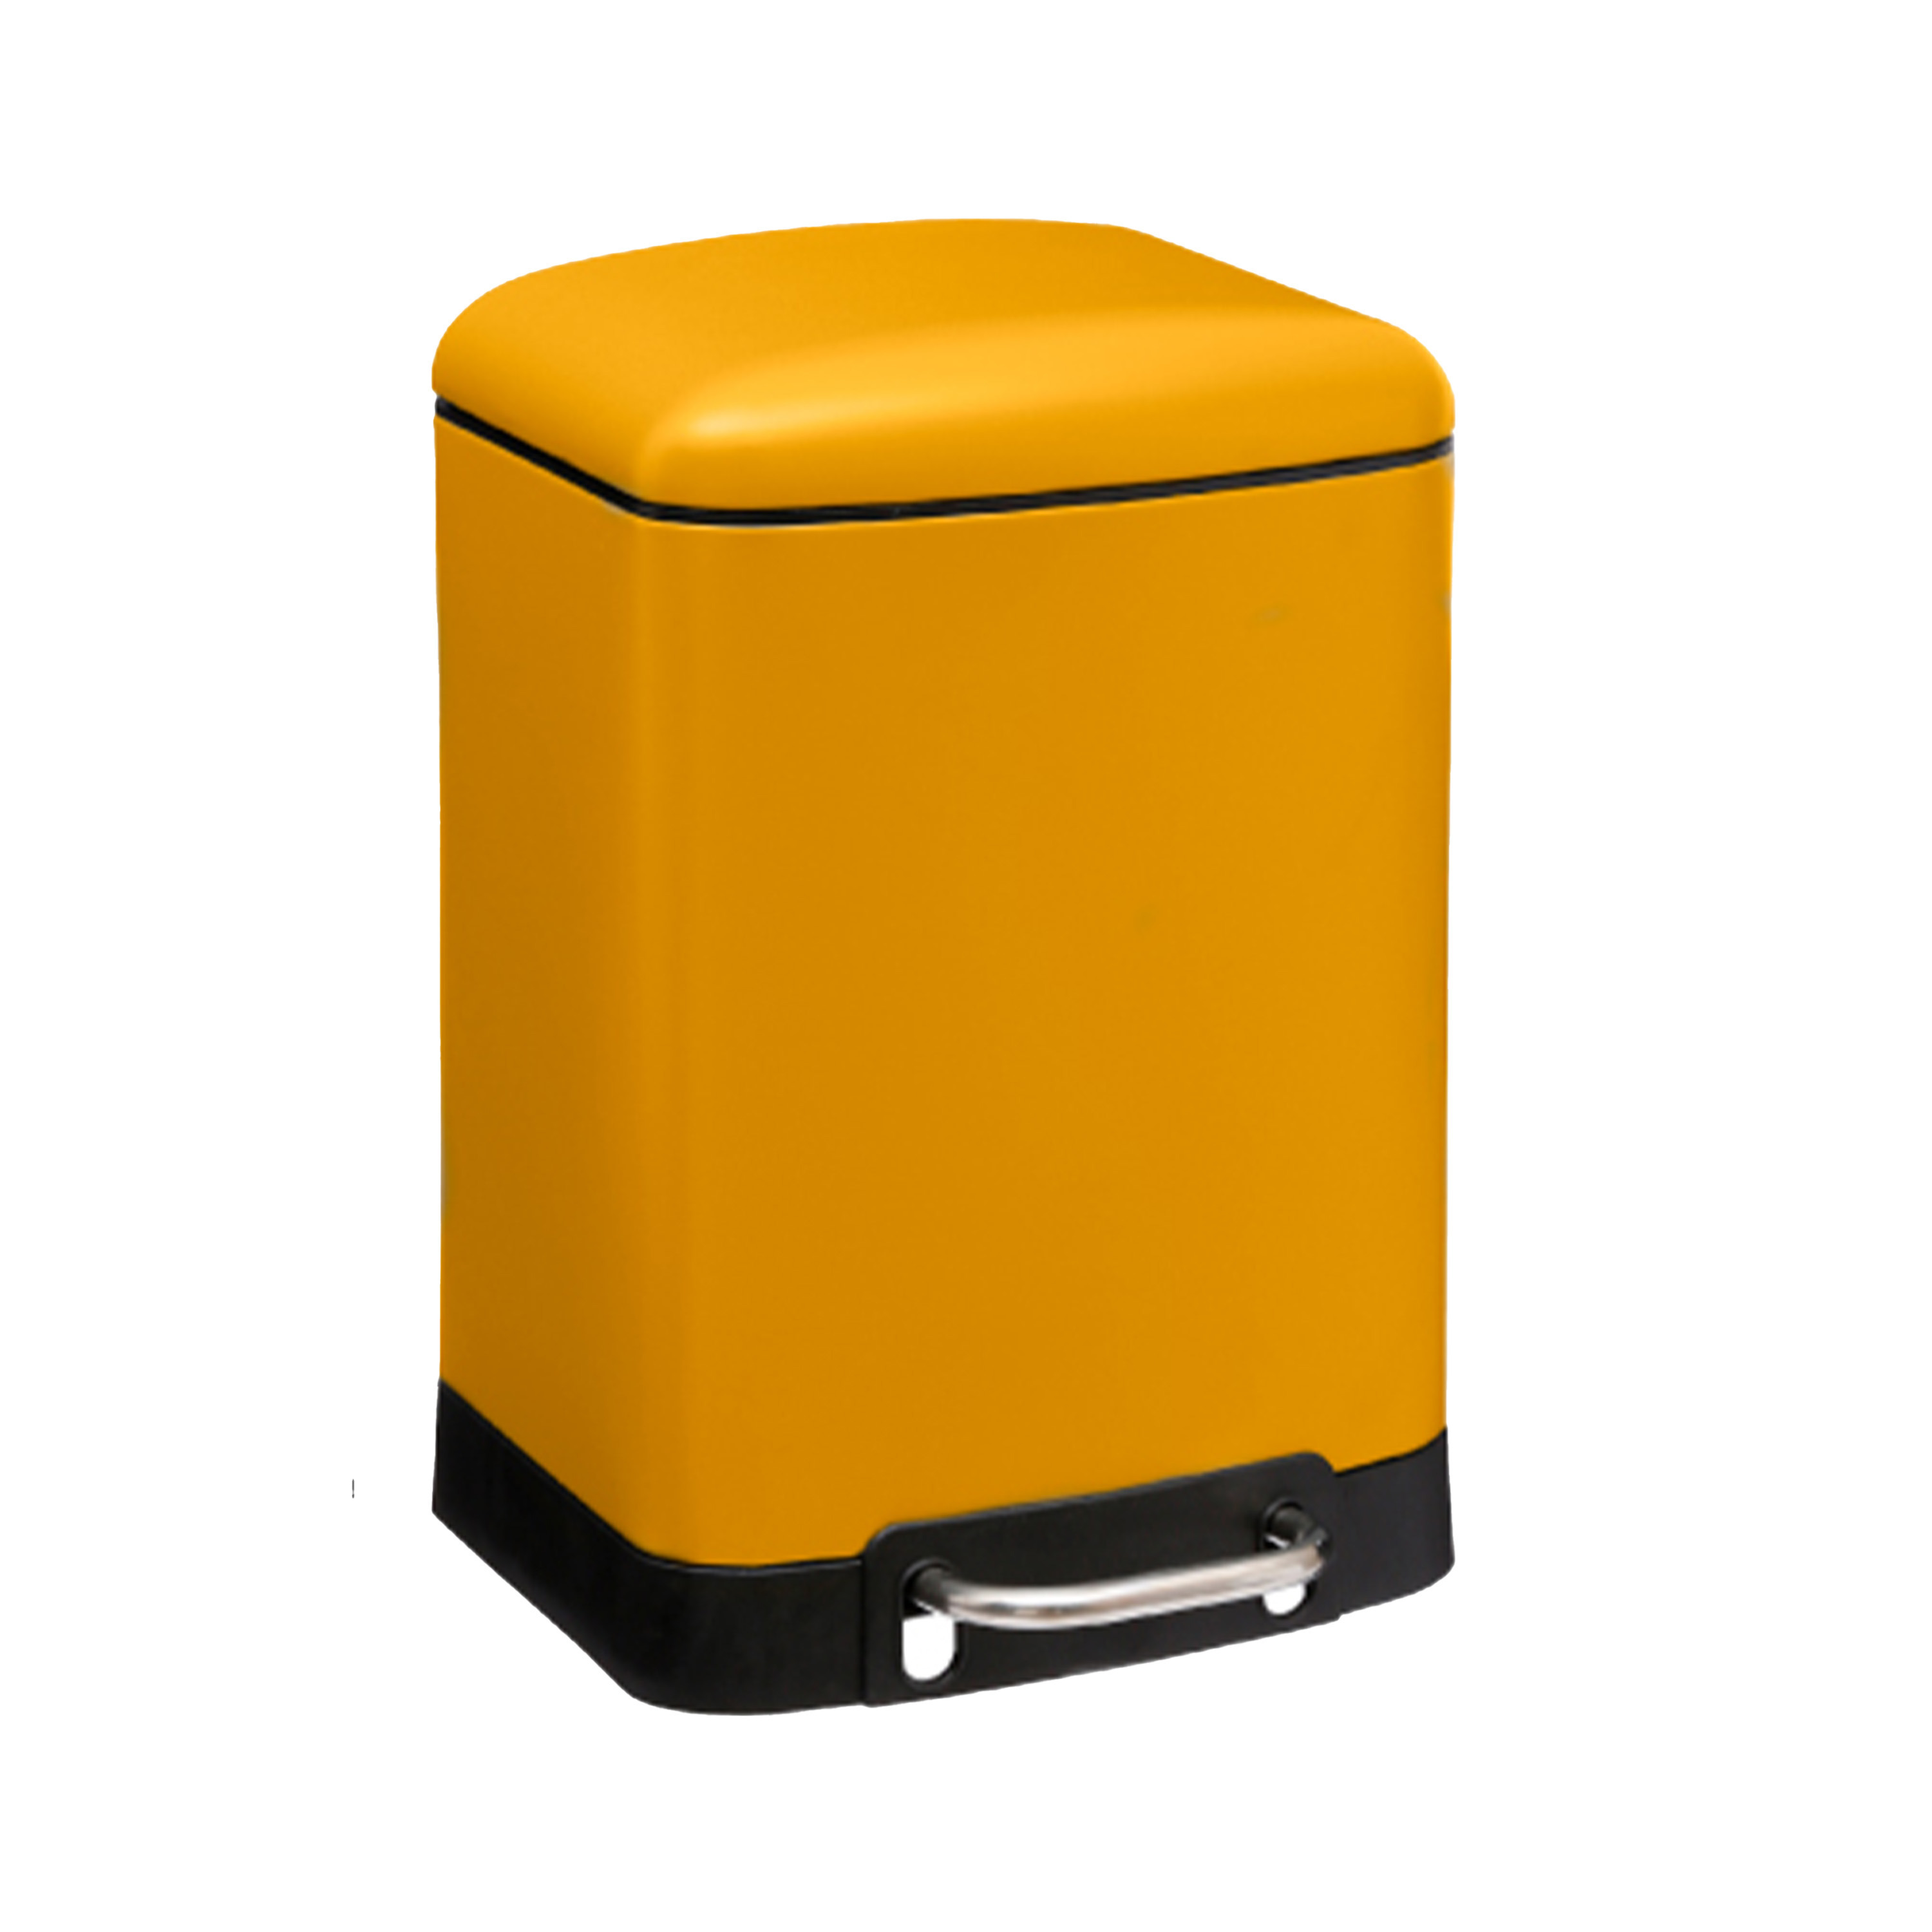 Prullenbak-pedaalemmer geel metaal 6 liter 23 x 22 x 32 cm toilet-badkamer